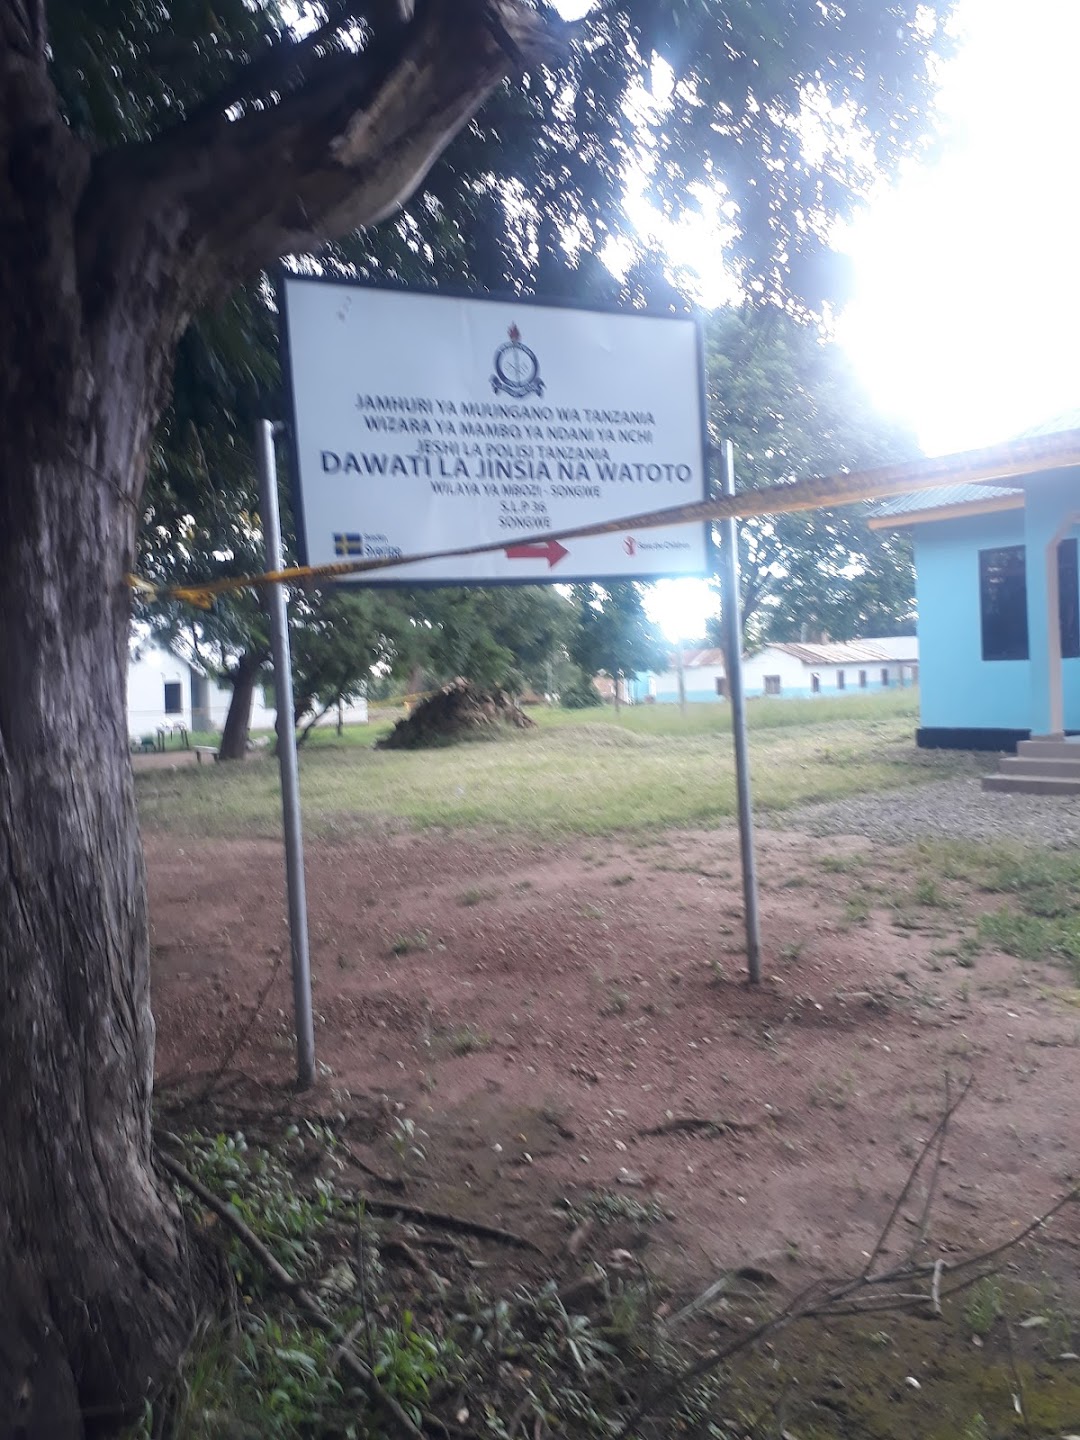 Vwawa District Hospital